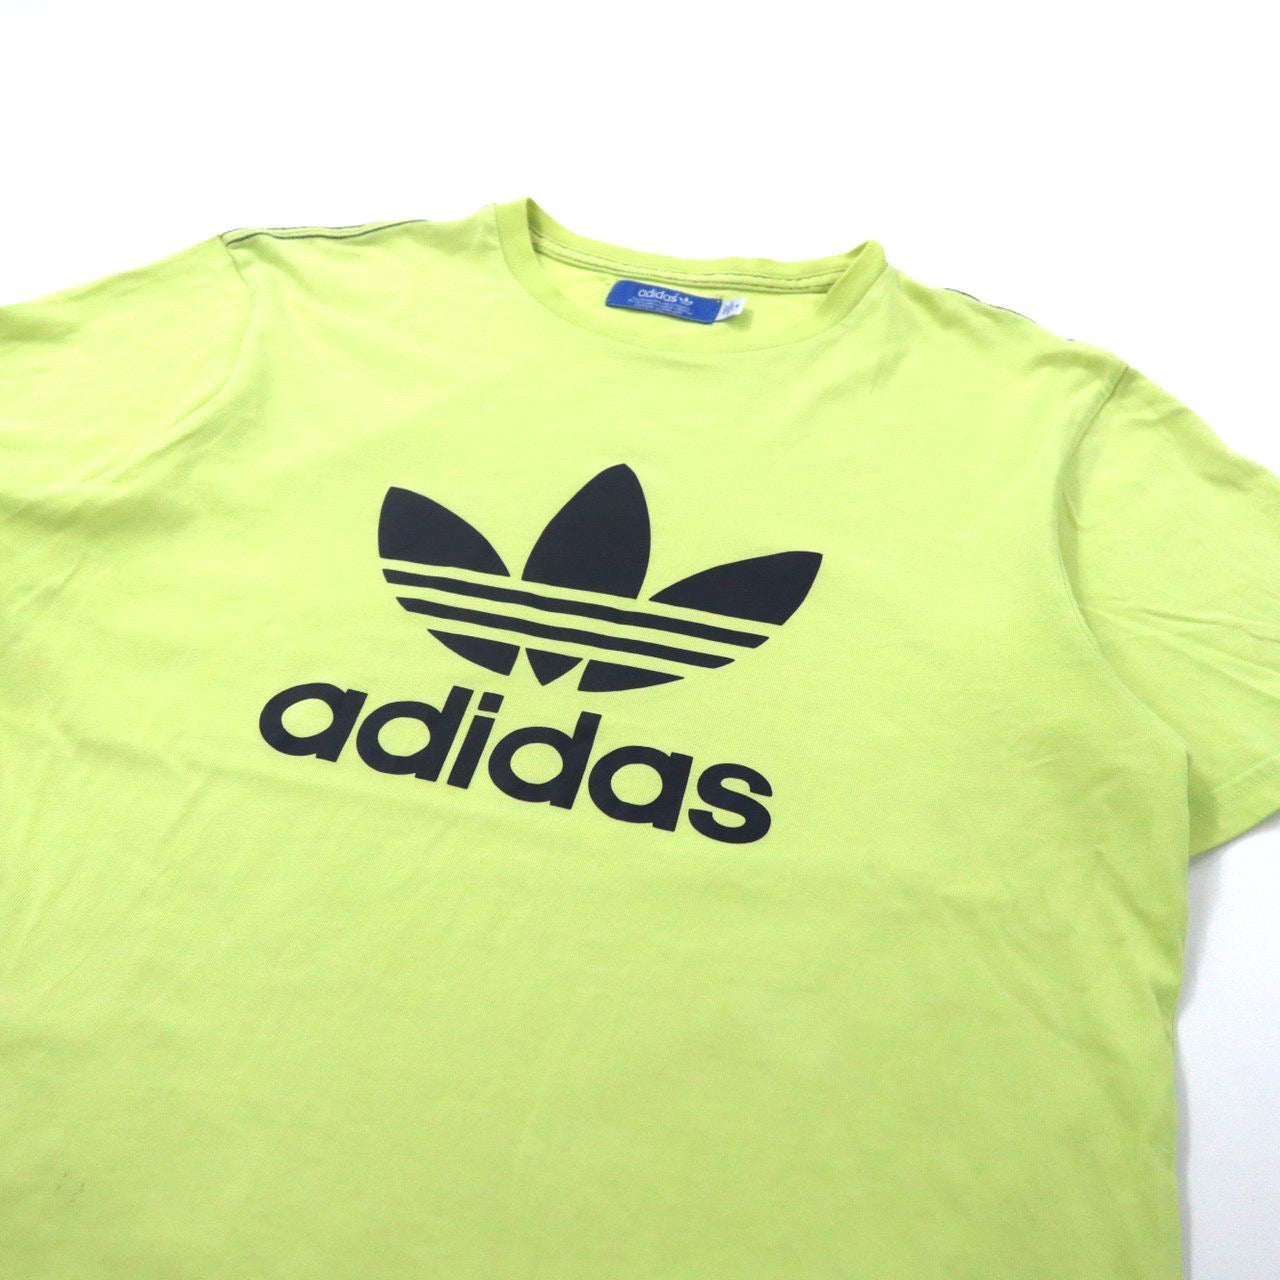 【大人気】アディダス オリジナルス ビッグロゴ 前プリント ゴールド Tシャツ